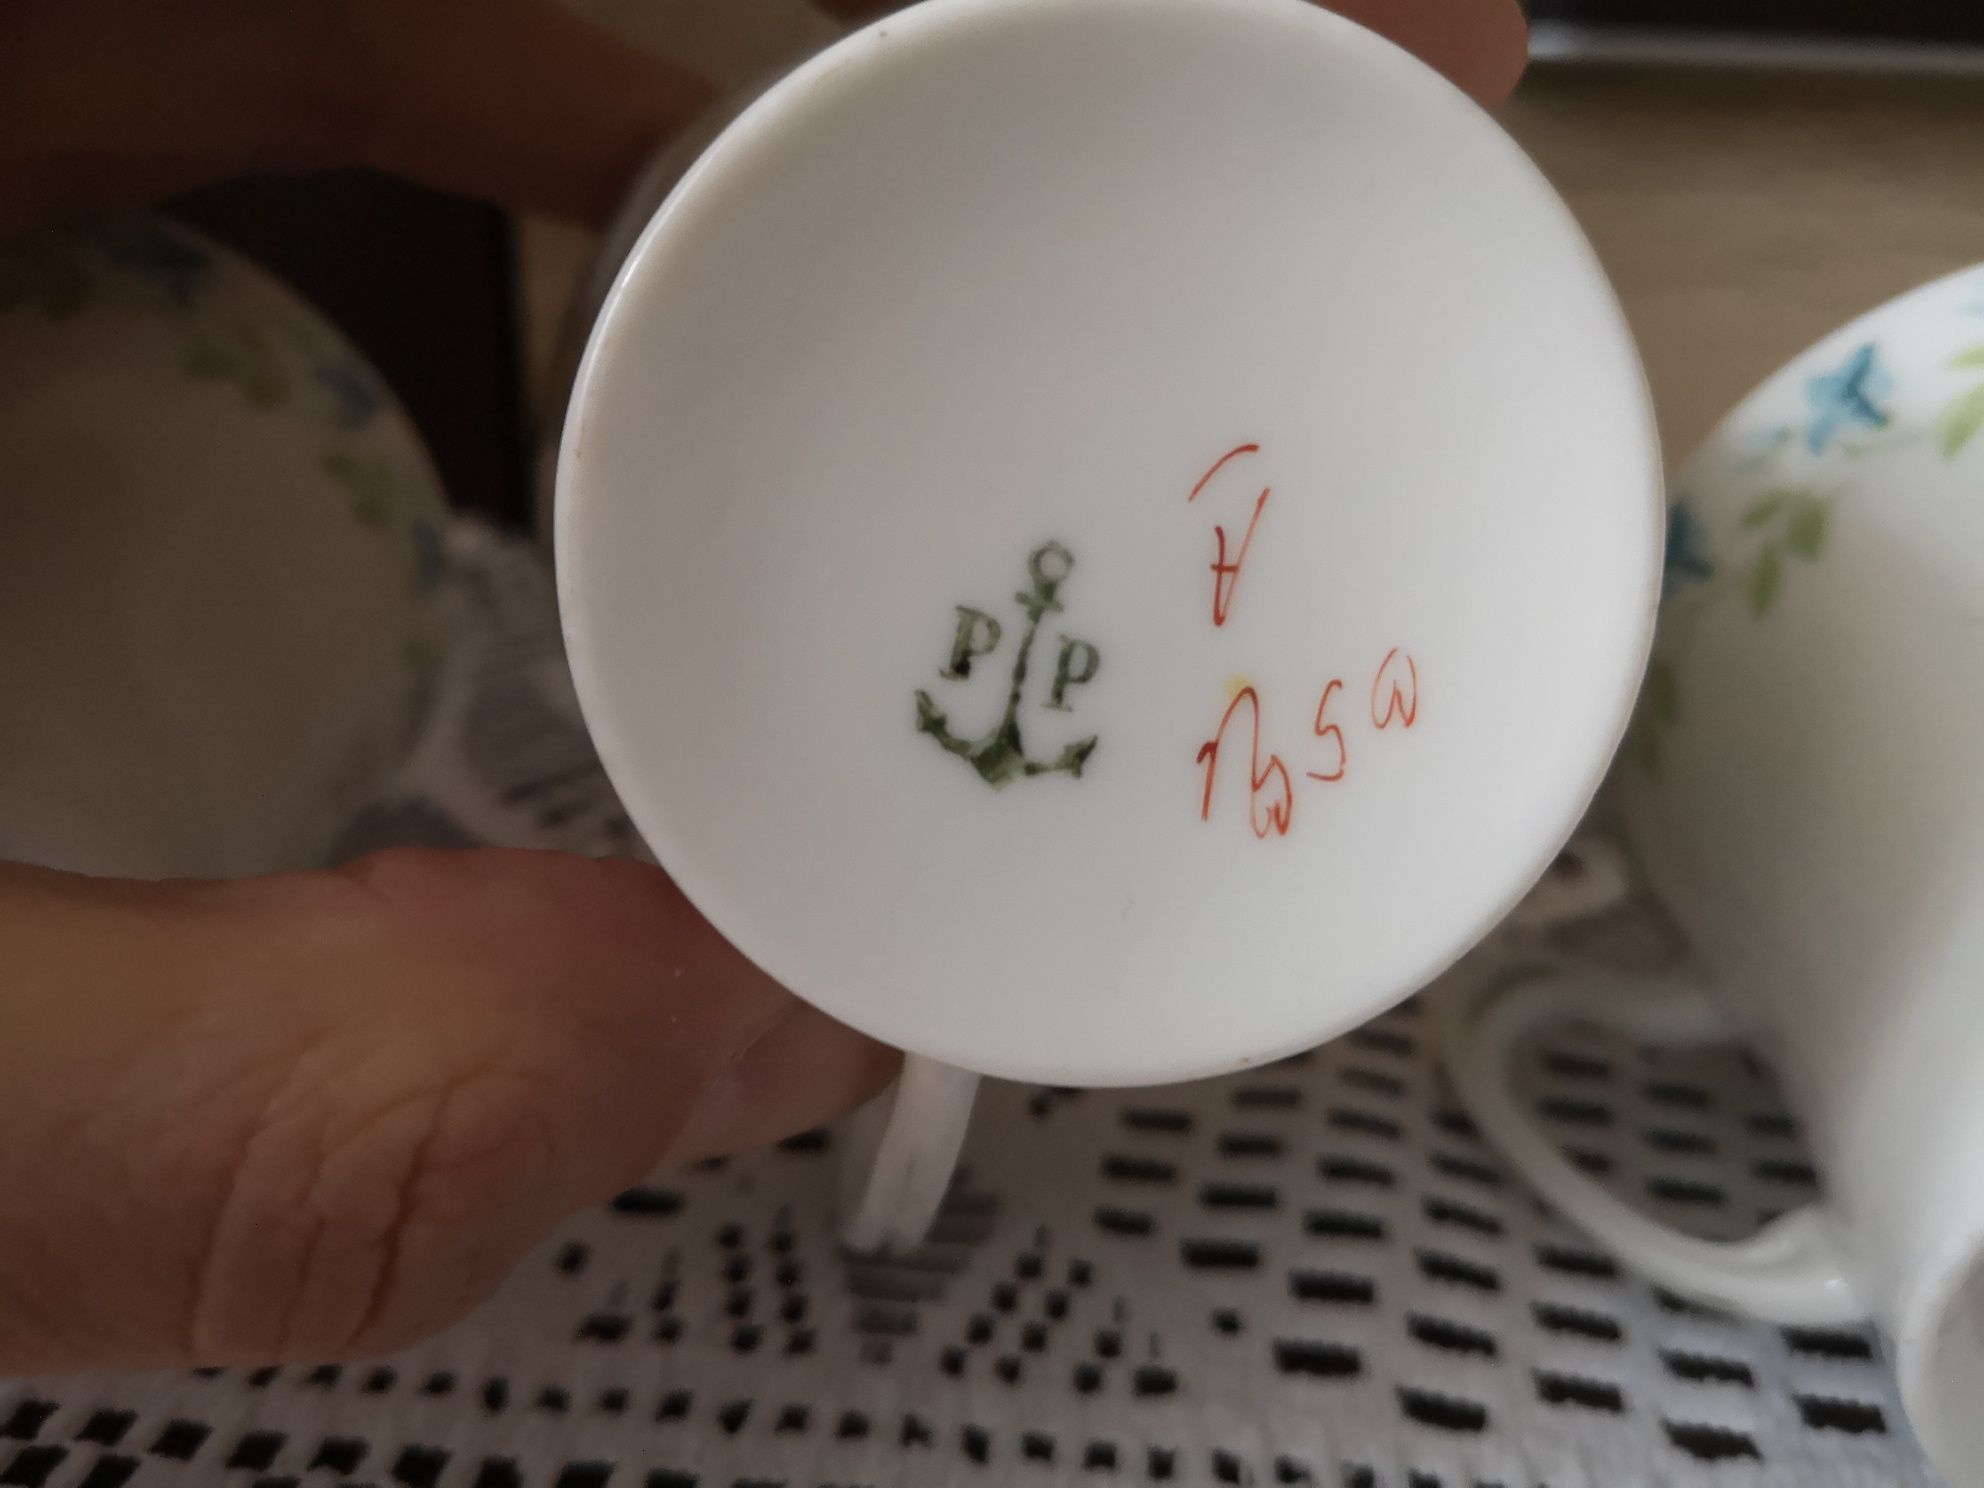 Zestaw czterech starych porcelanowych filiżanek Porsgrund przedwojenne